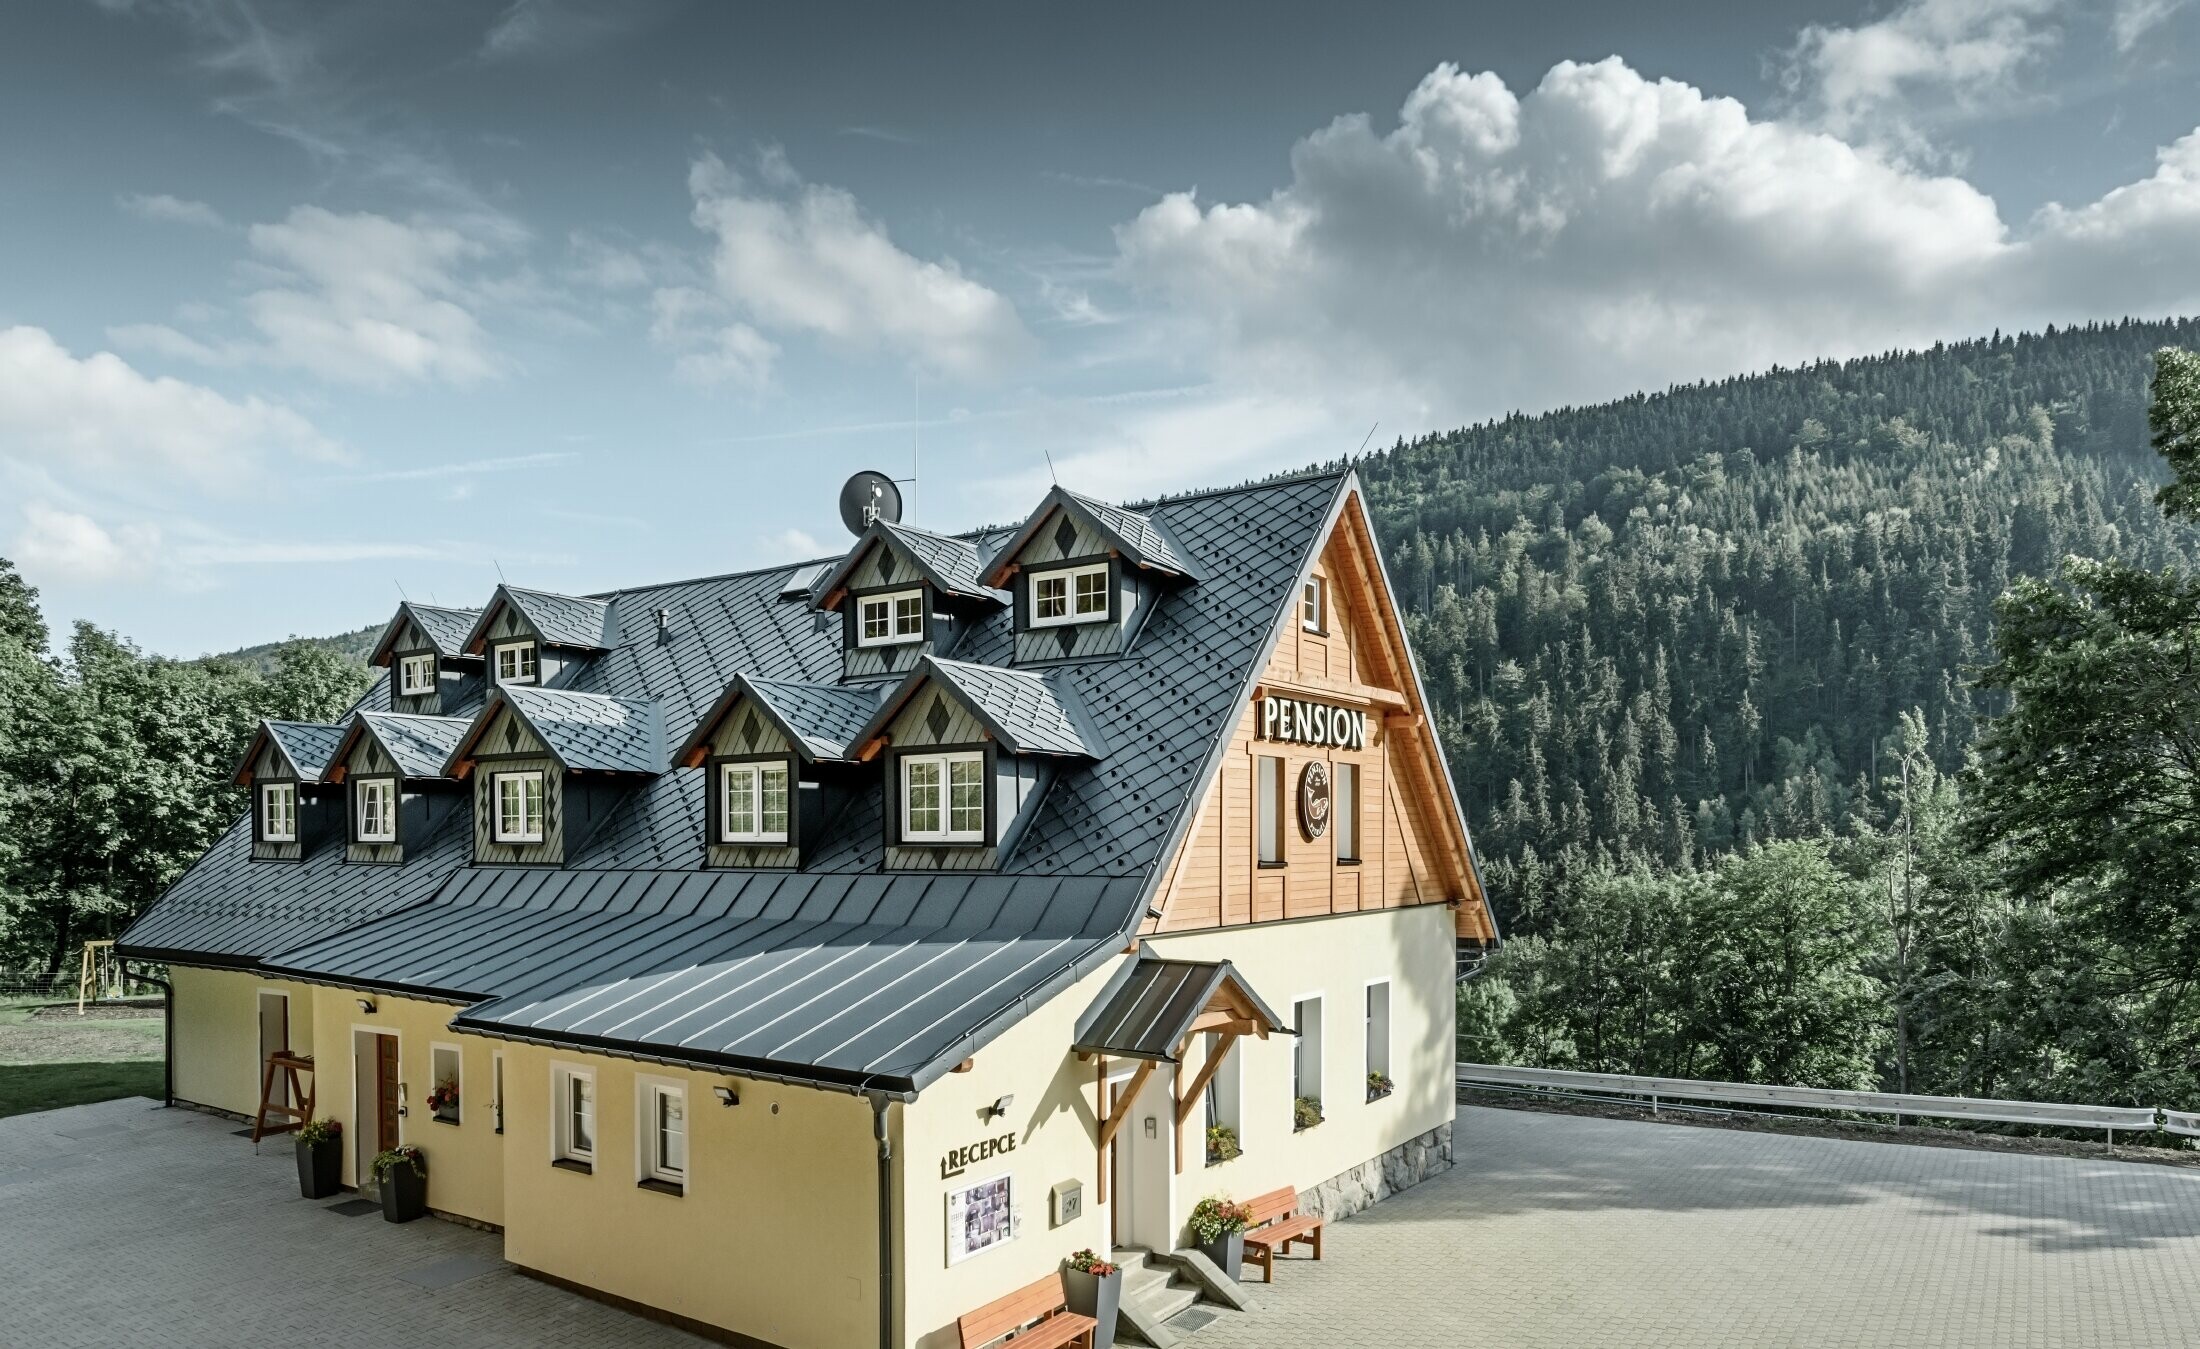 Pensione in Repubblica Ceca, con tetto inclinato e molti abbaini, rivestita con un tetto in alluminio di PREFA, tetto a scaglie sistema paraneve